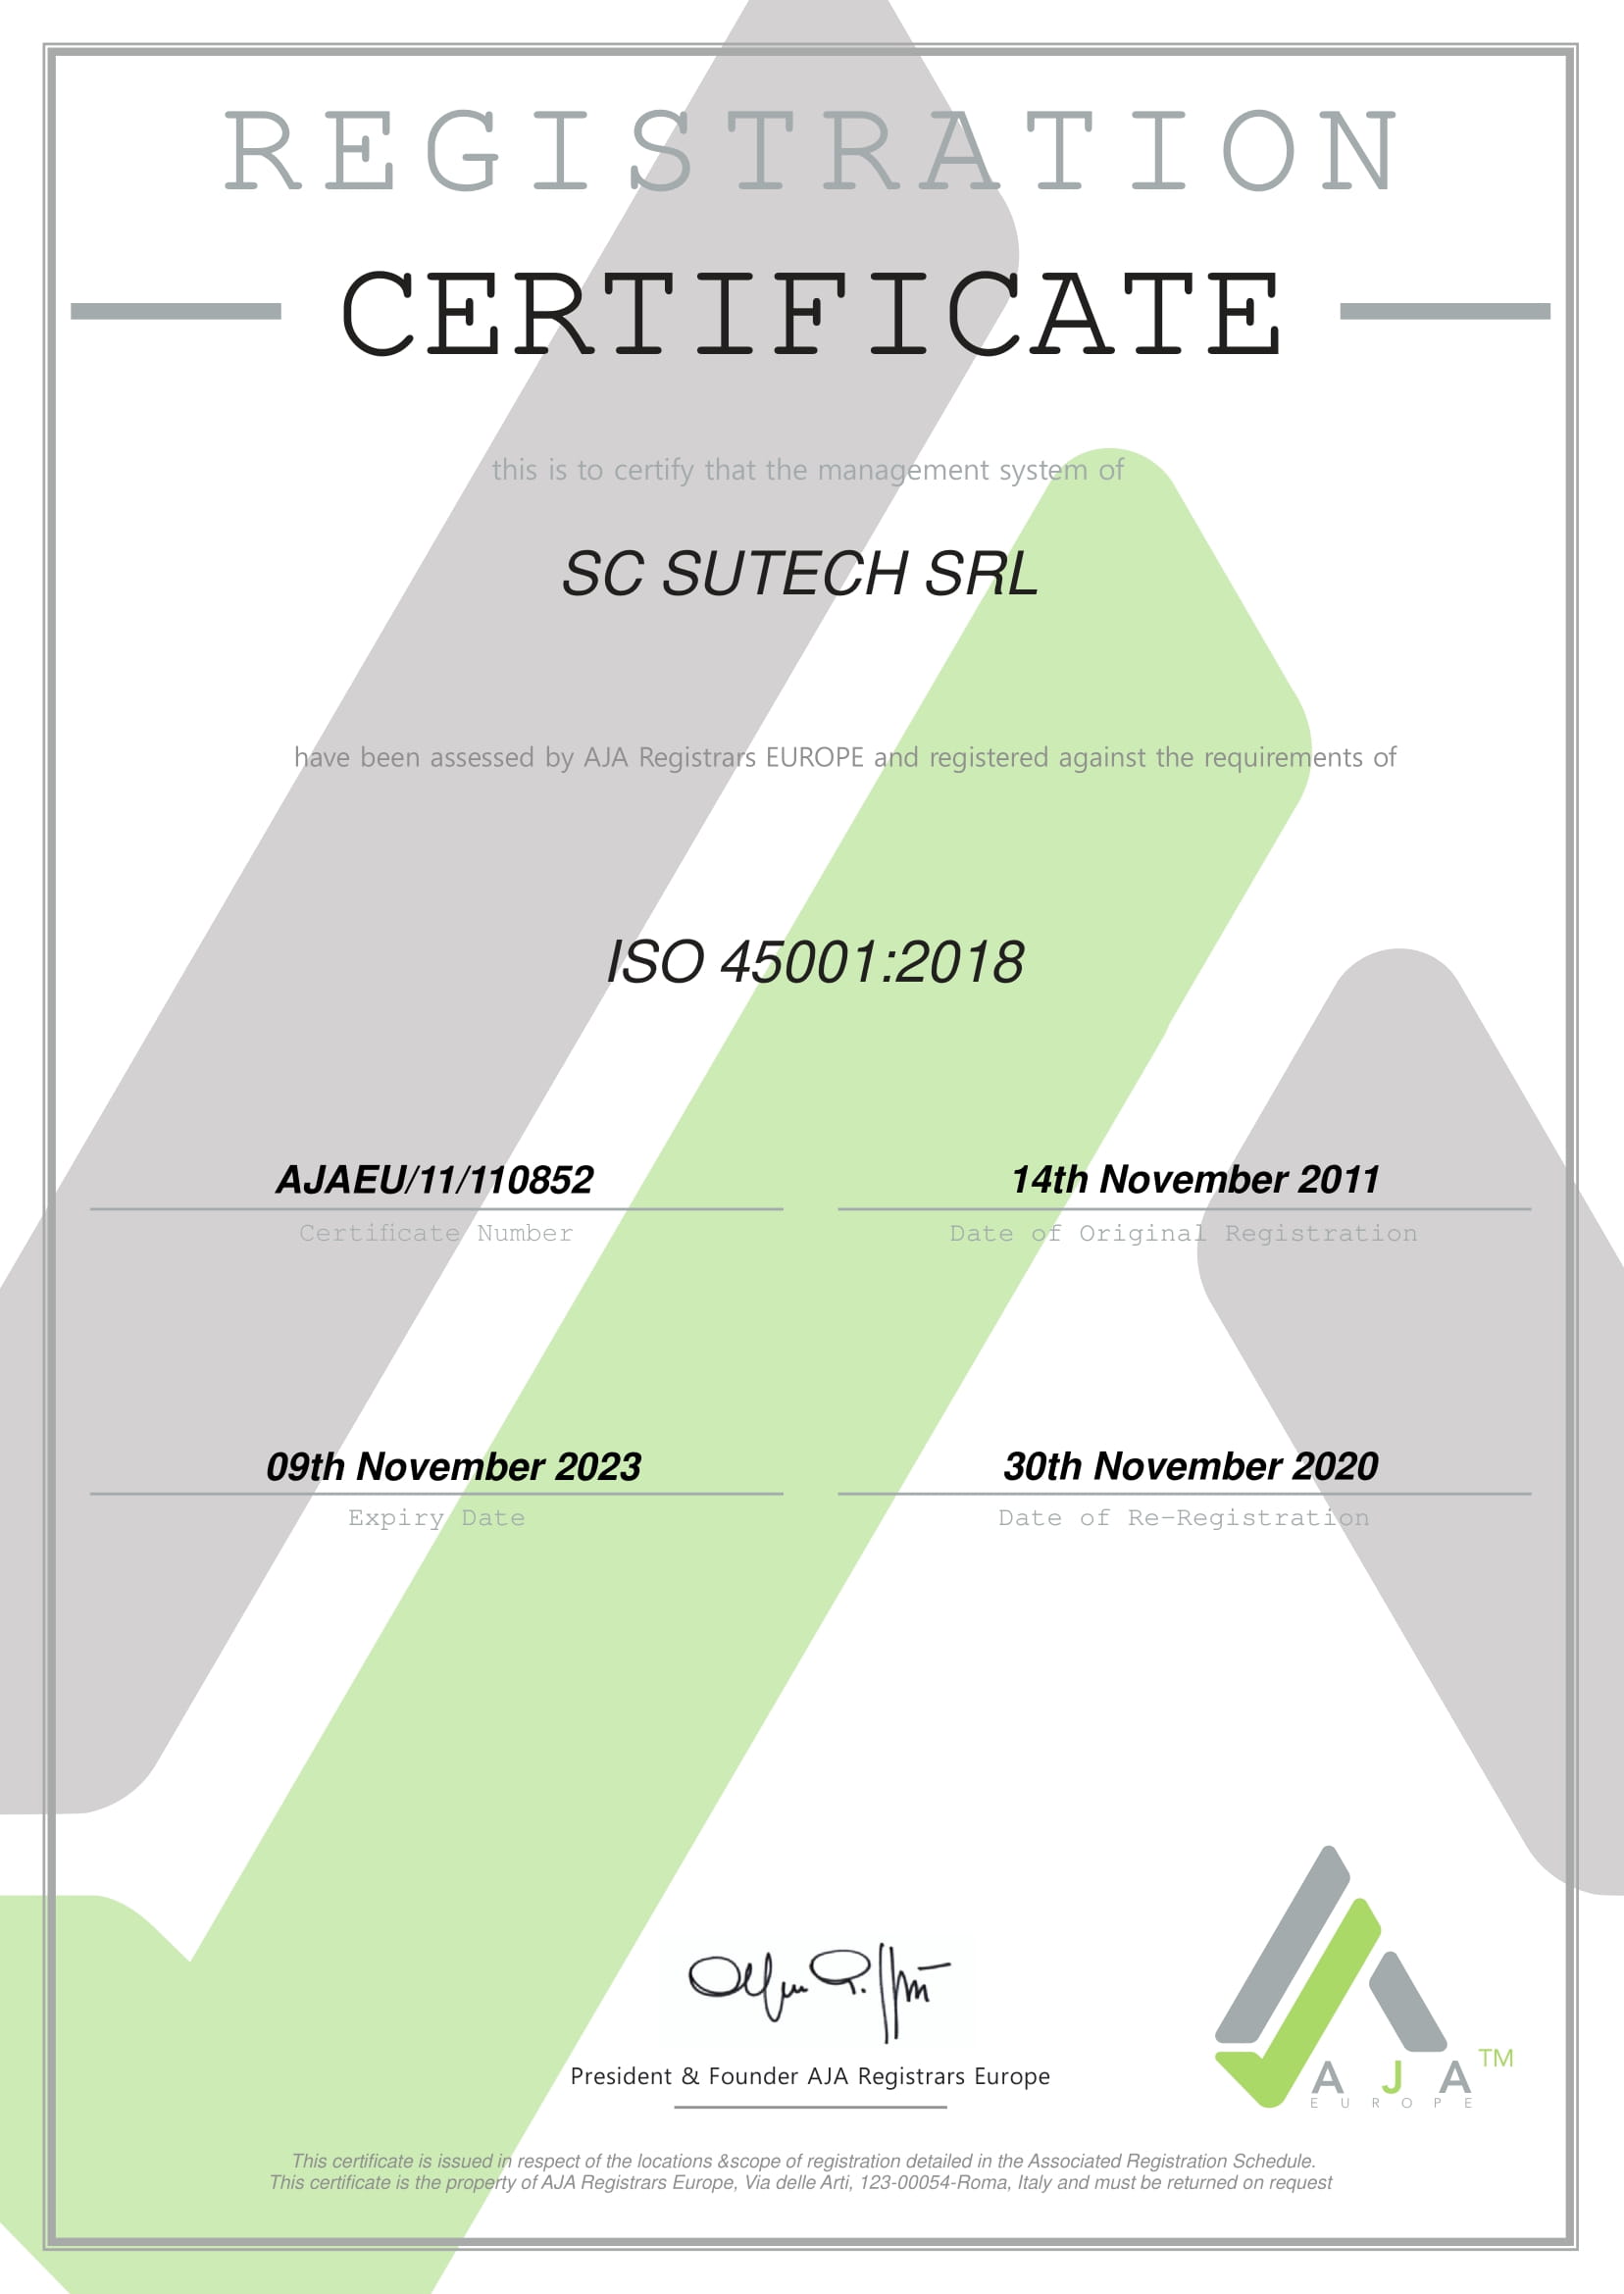 //sutech.ro/wp-content/uploads/2021/08/CERTIFICAT-SUTECH-45001-1.jpg